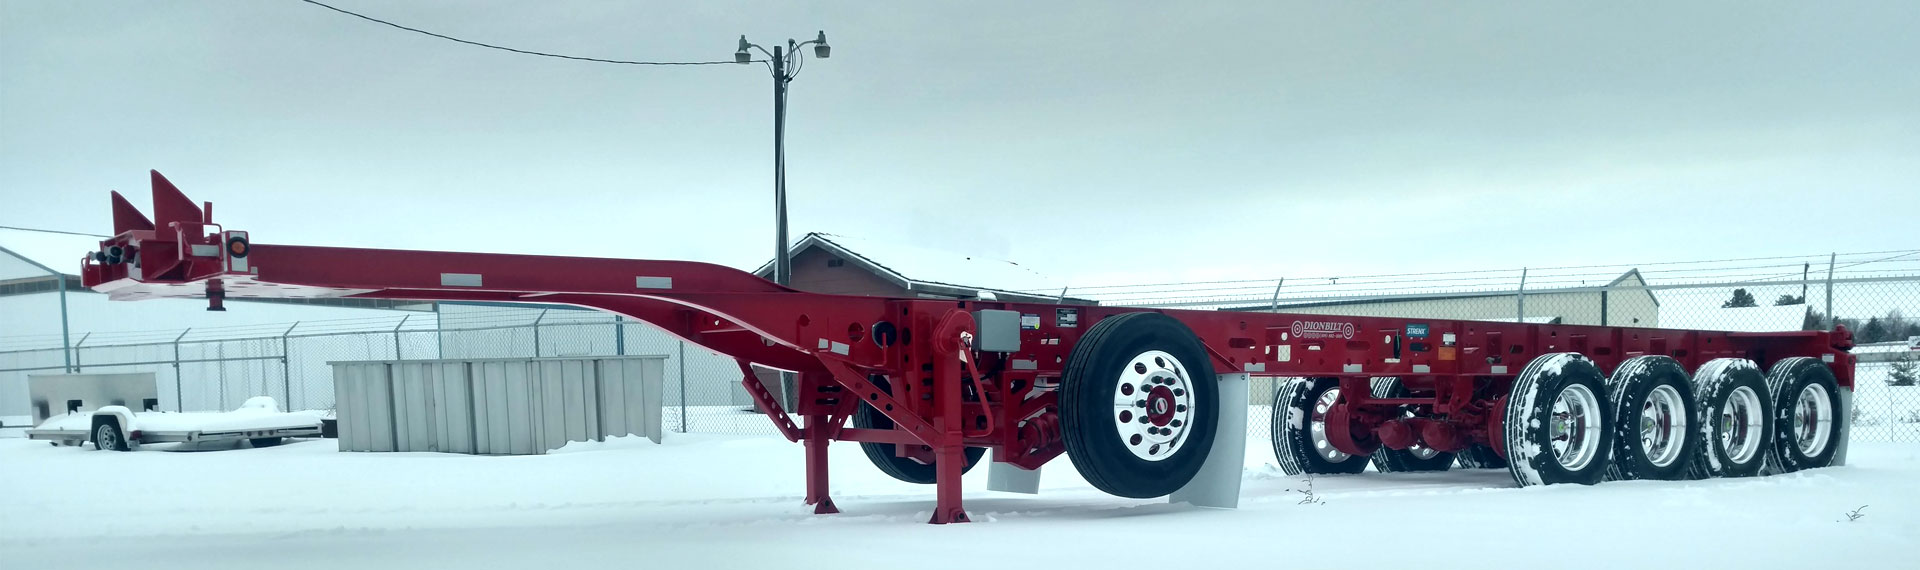 Ett långt och lätt trailerchassi tillverkat av Strenx® 100 som står på snöig mark